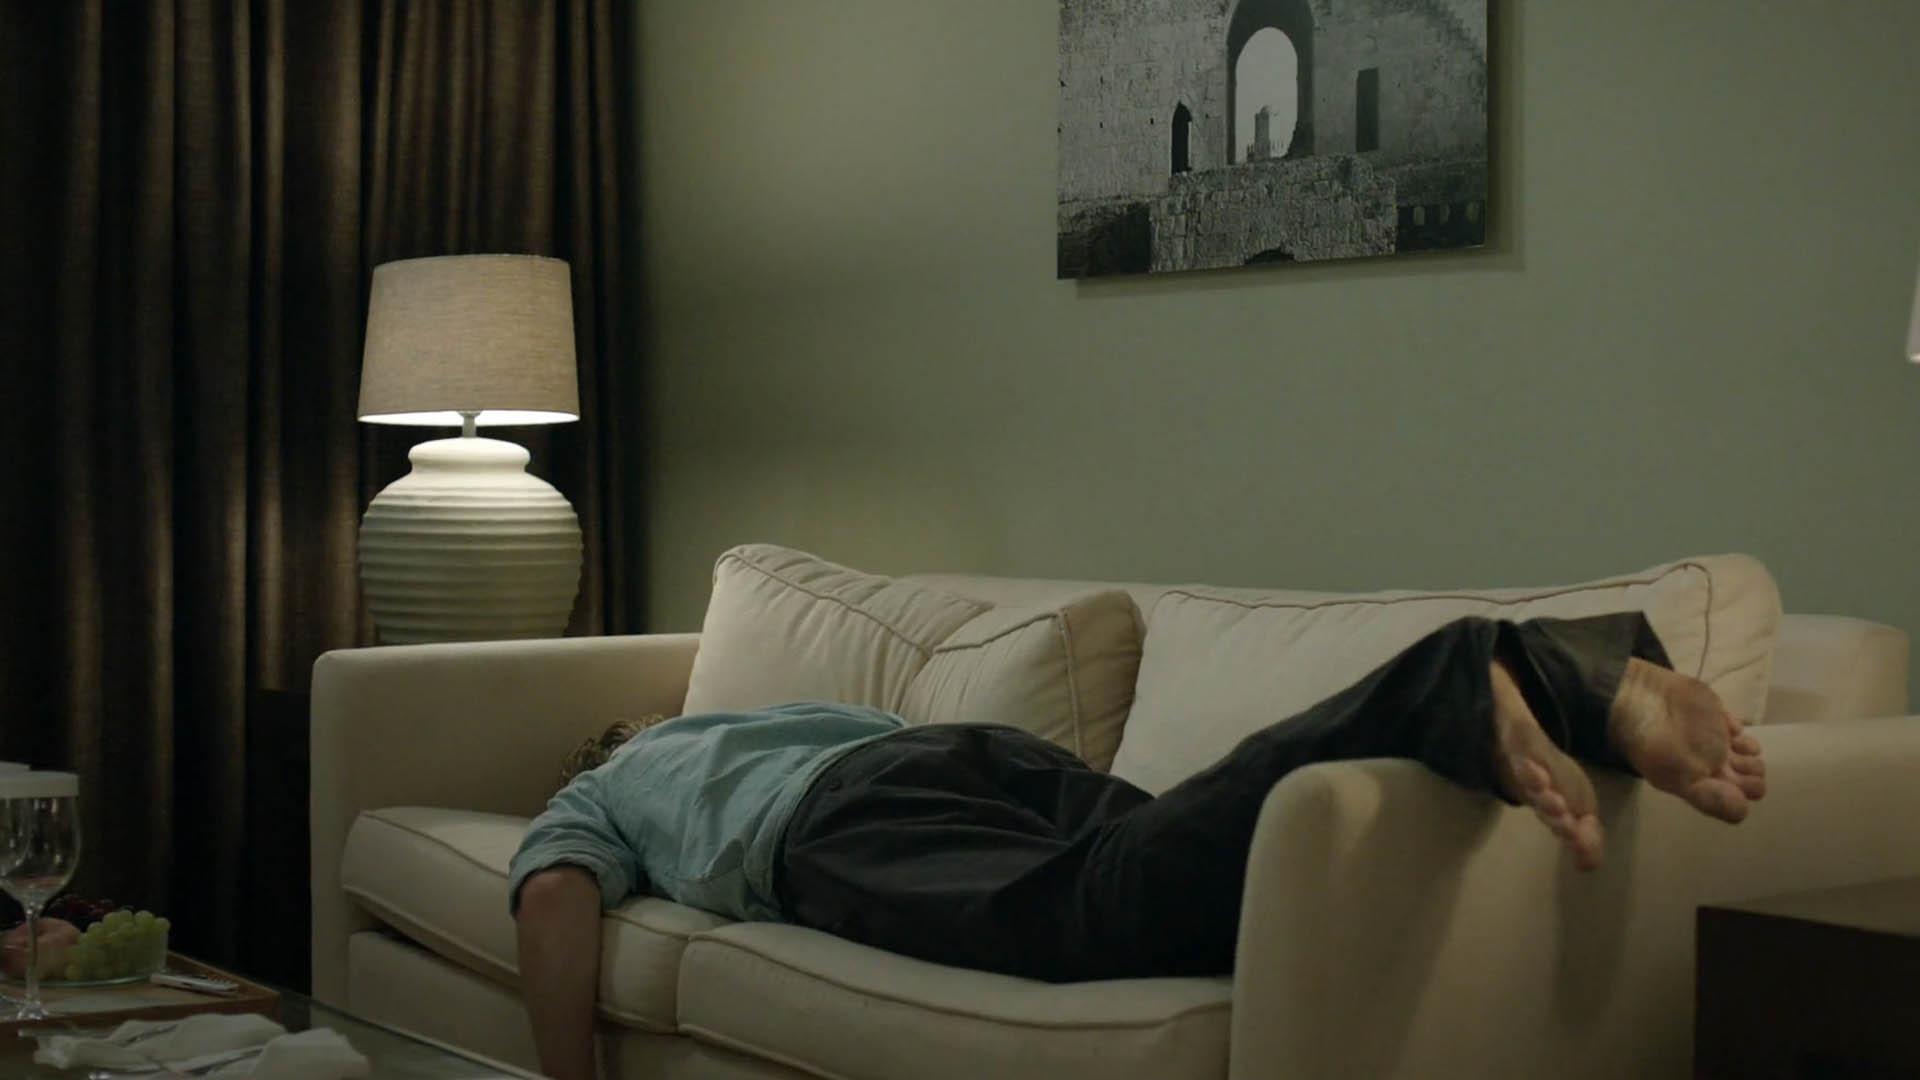 شخصیت جسی خوابیده روی شکم در فیلم Before midnight